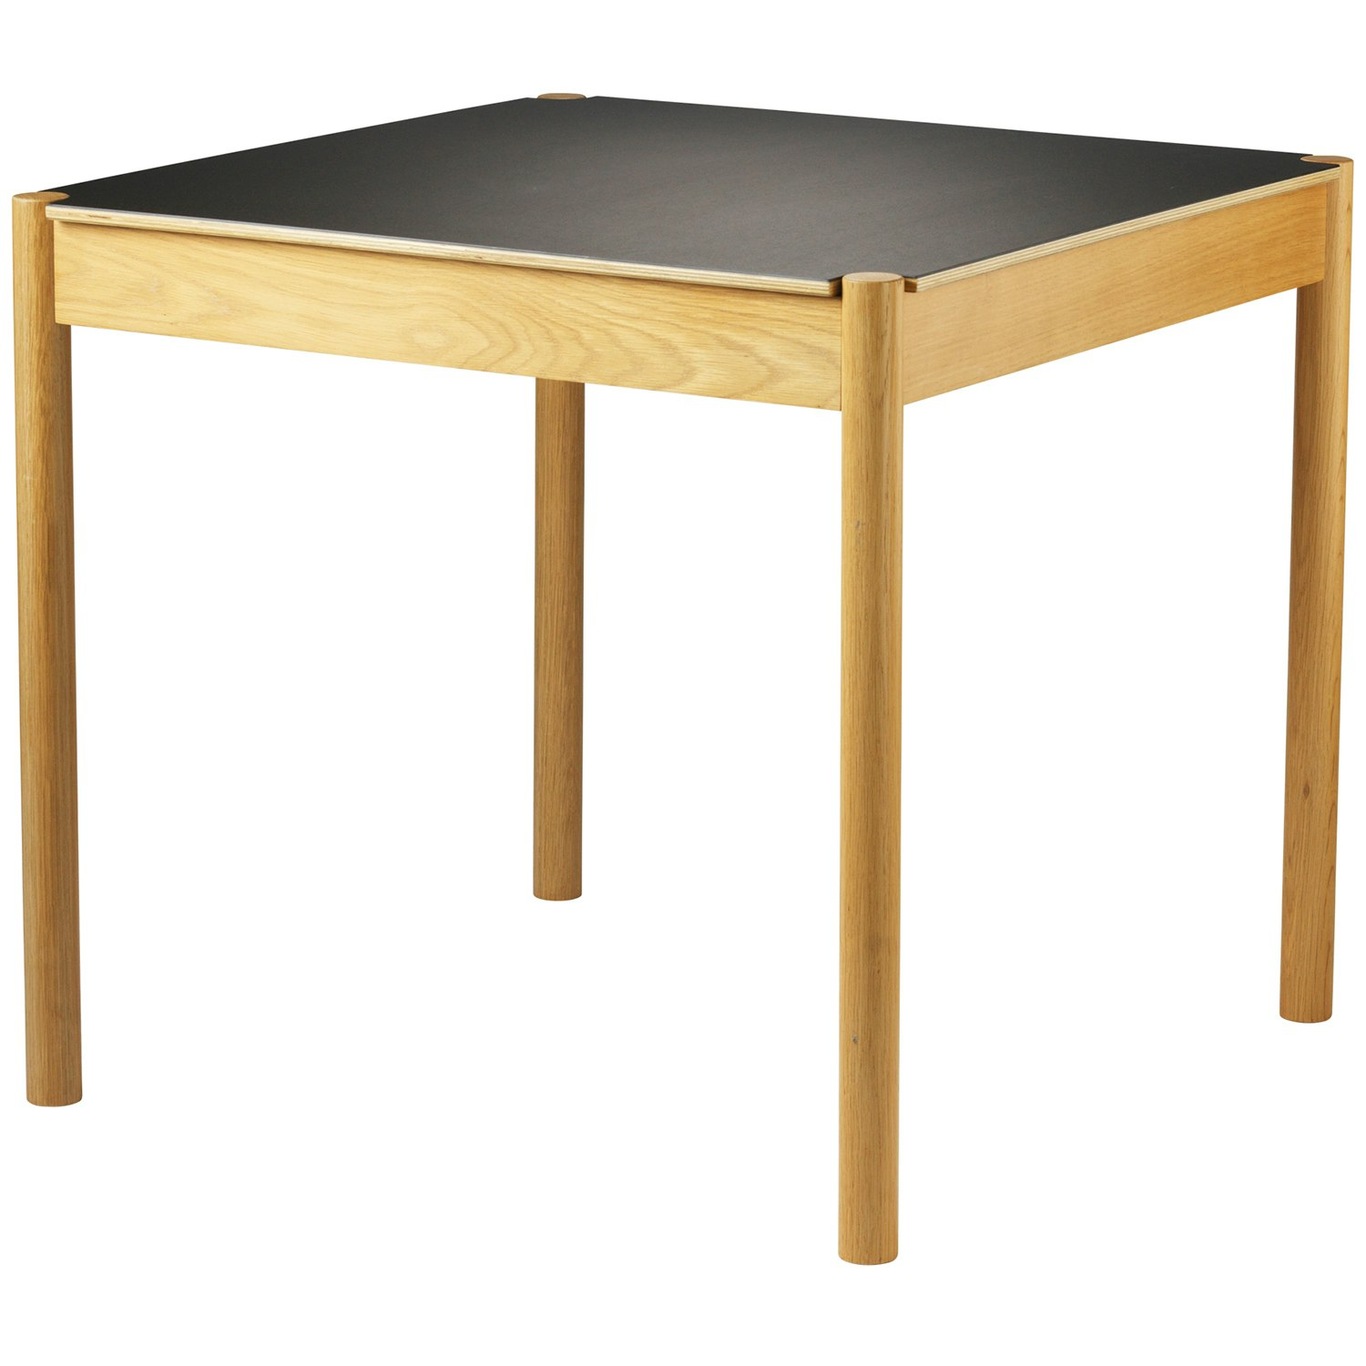 C44 Dining Table Oak / Linoleum, 80x80 cm